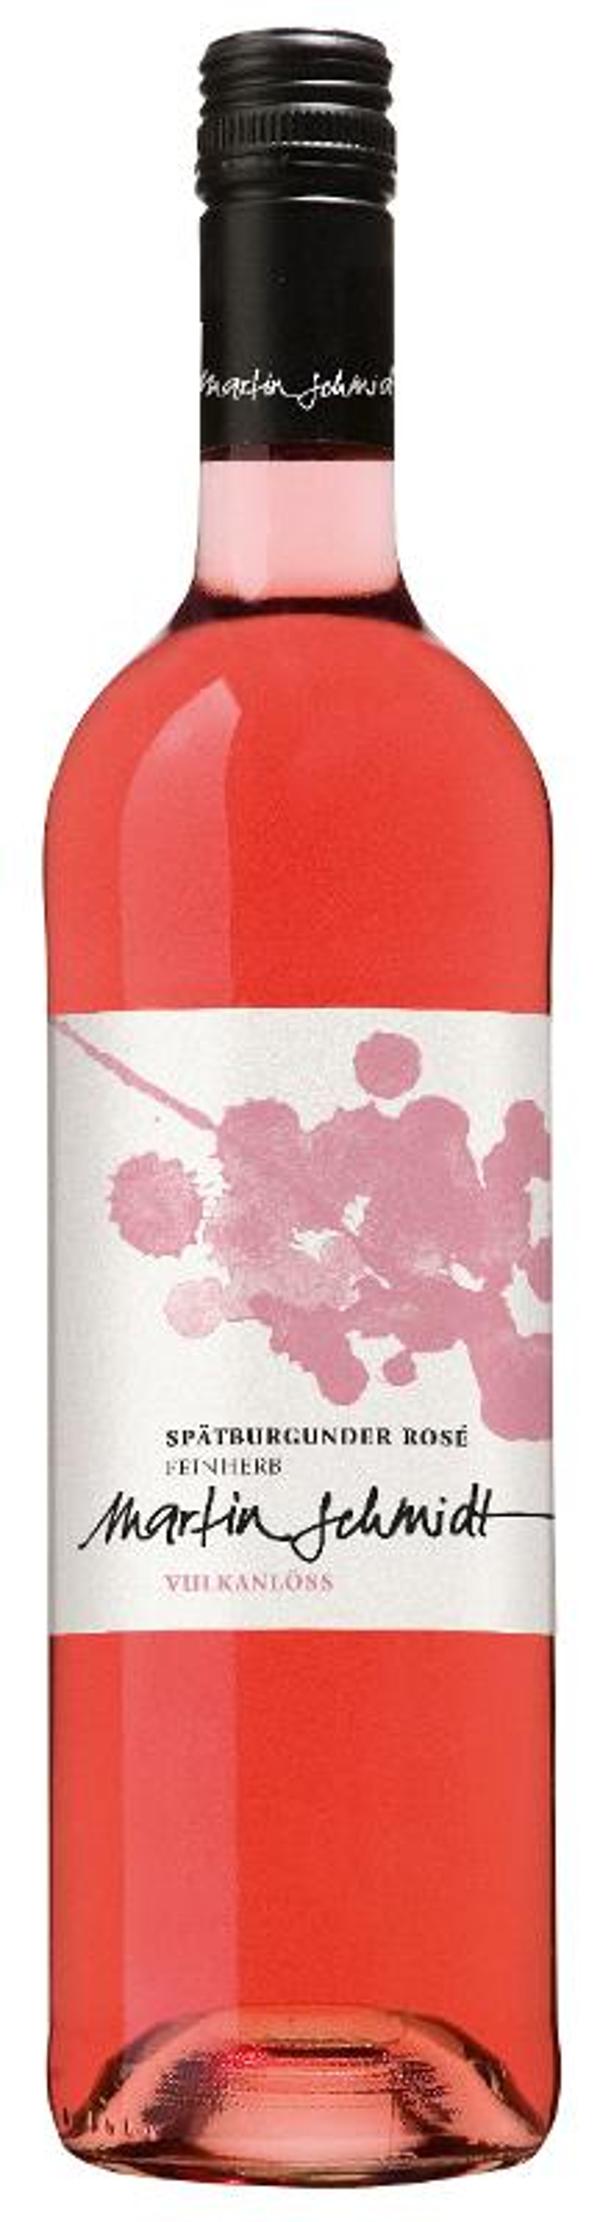 Produktfoto zu VPE Vulkanlöss rosé 6x0,75 l Kiefer